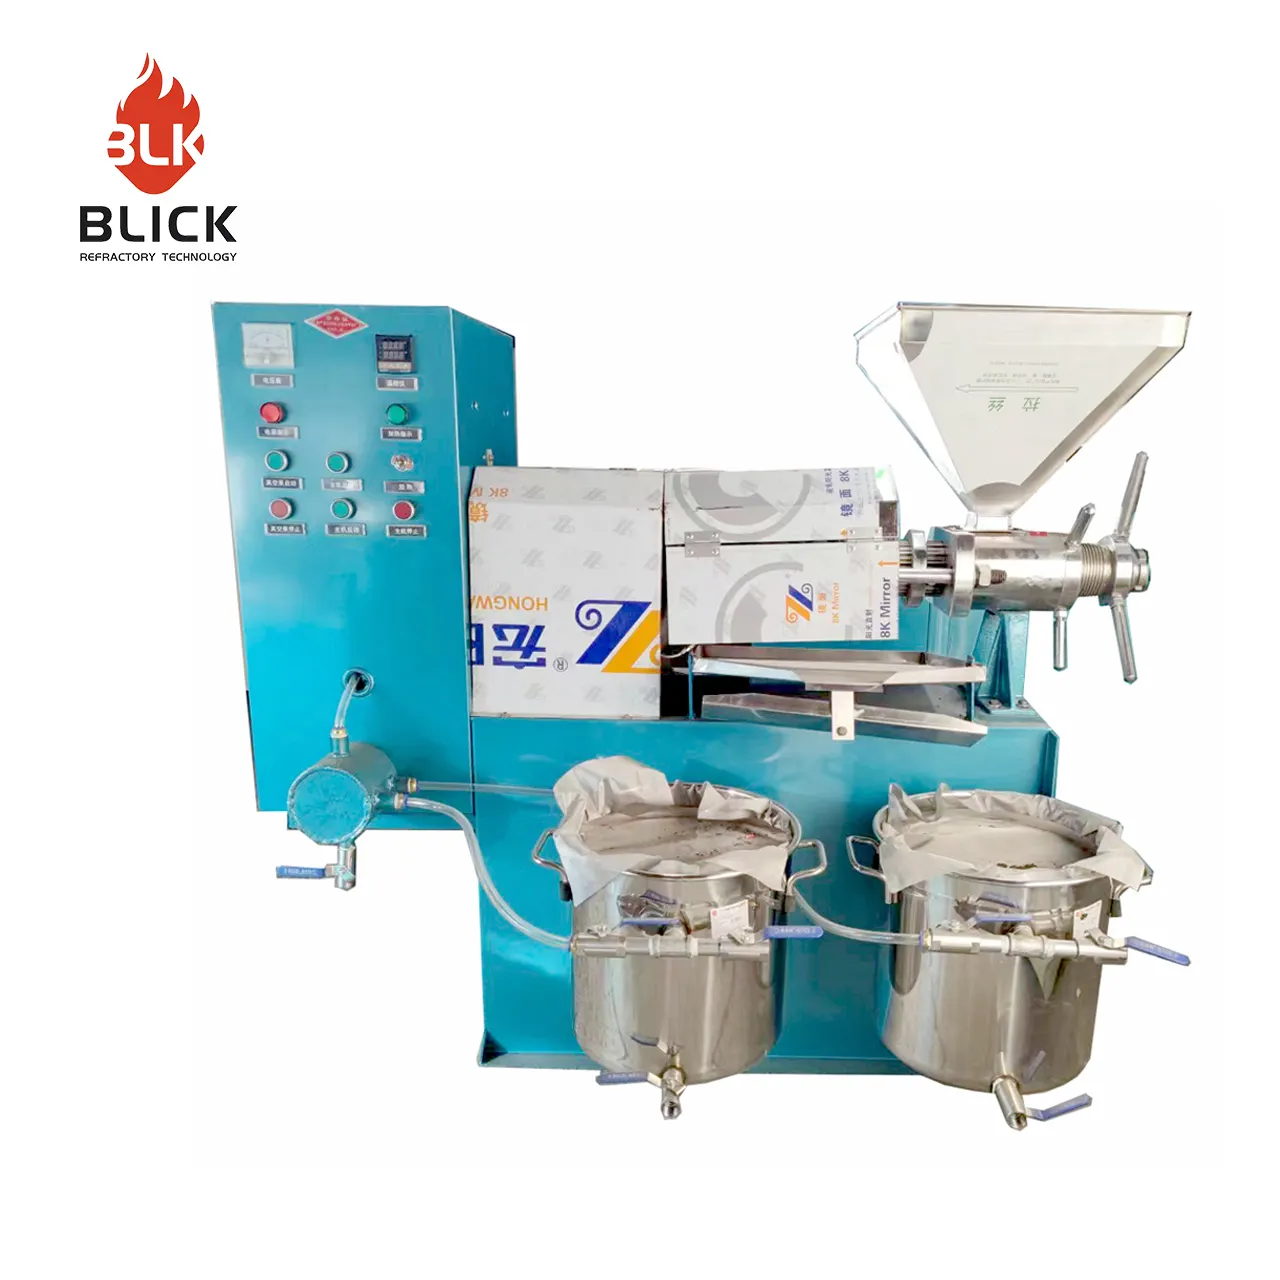 BLKLX100-extractor de aceite de maíz, máquina extractora de aceite de prensa en frío, profesional, nueva